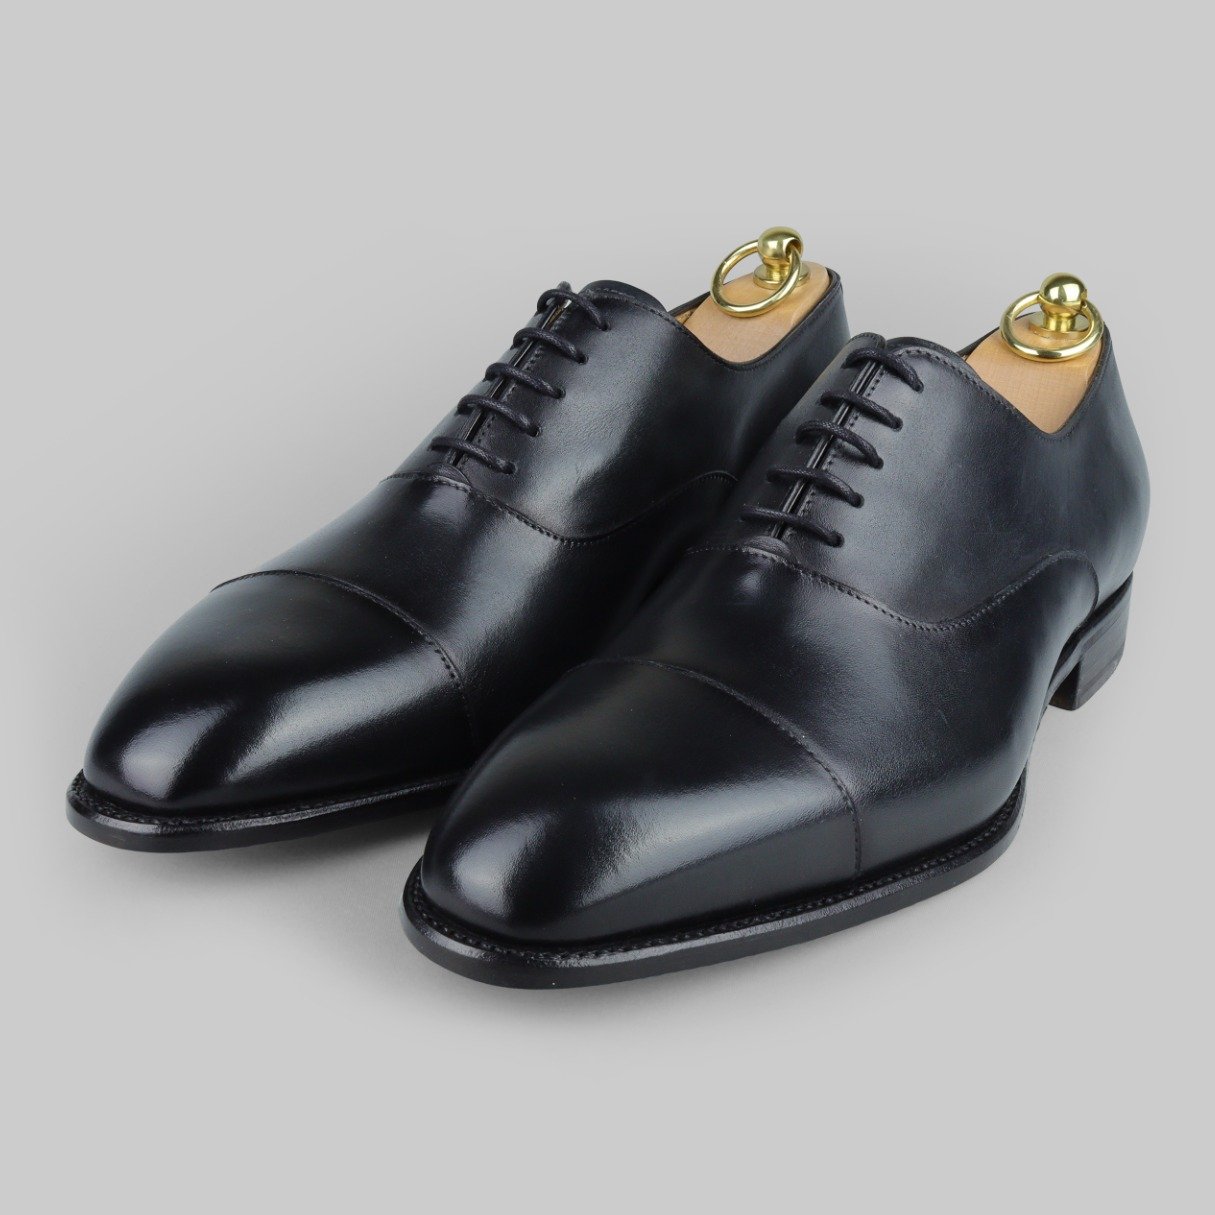 Shop men's oxford shoes